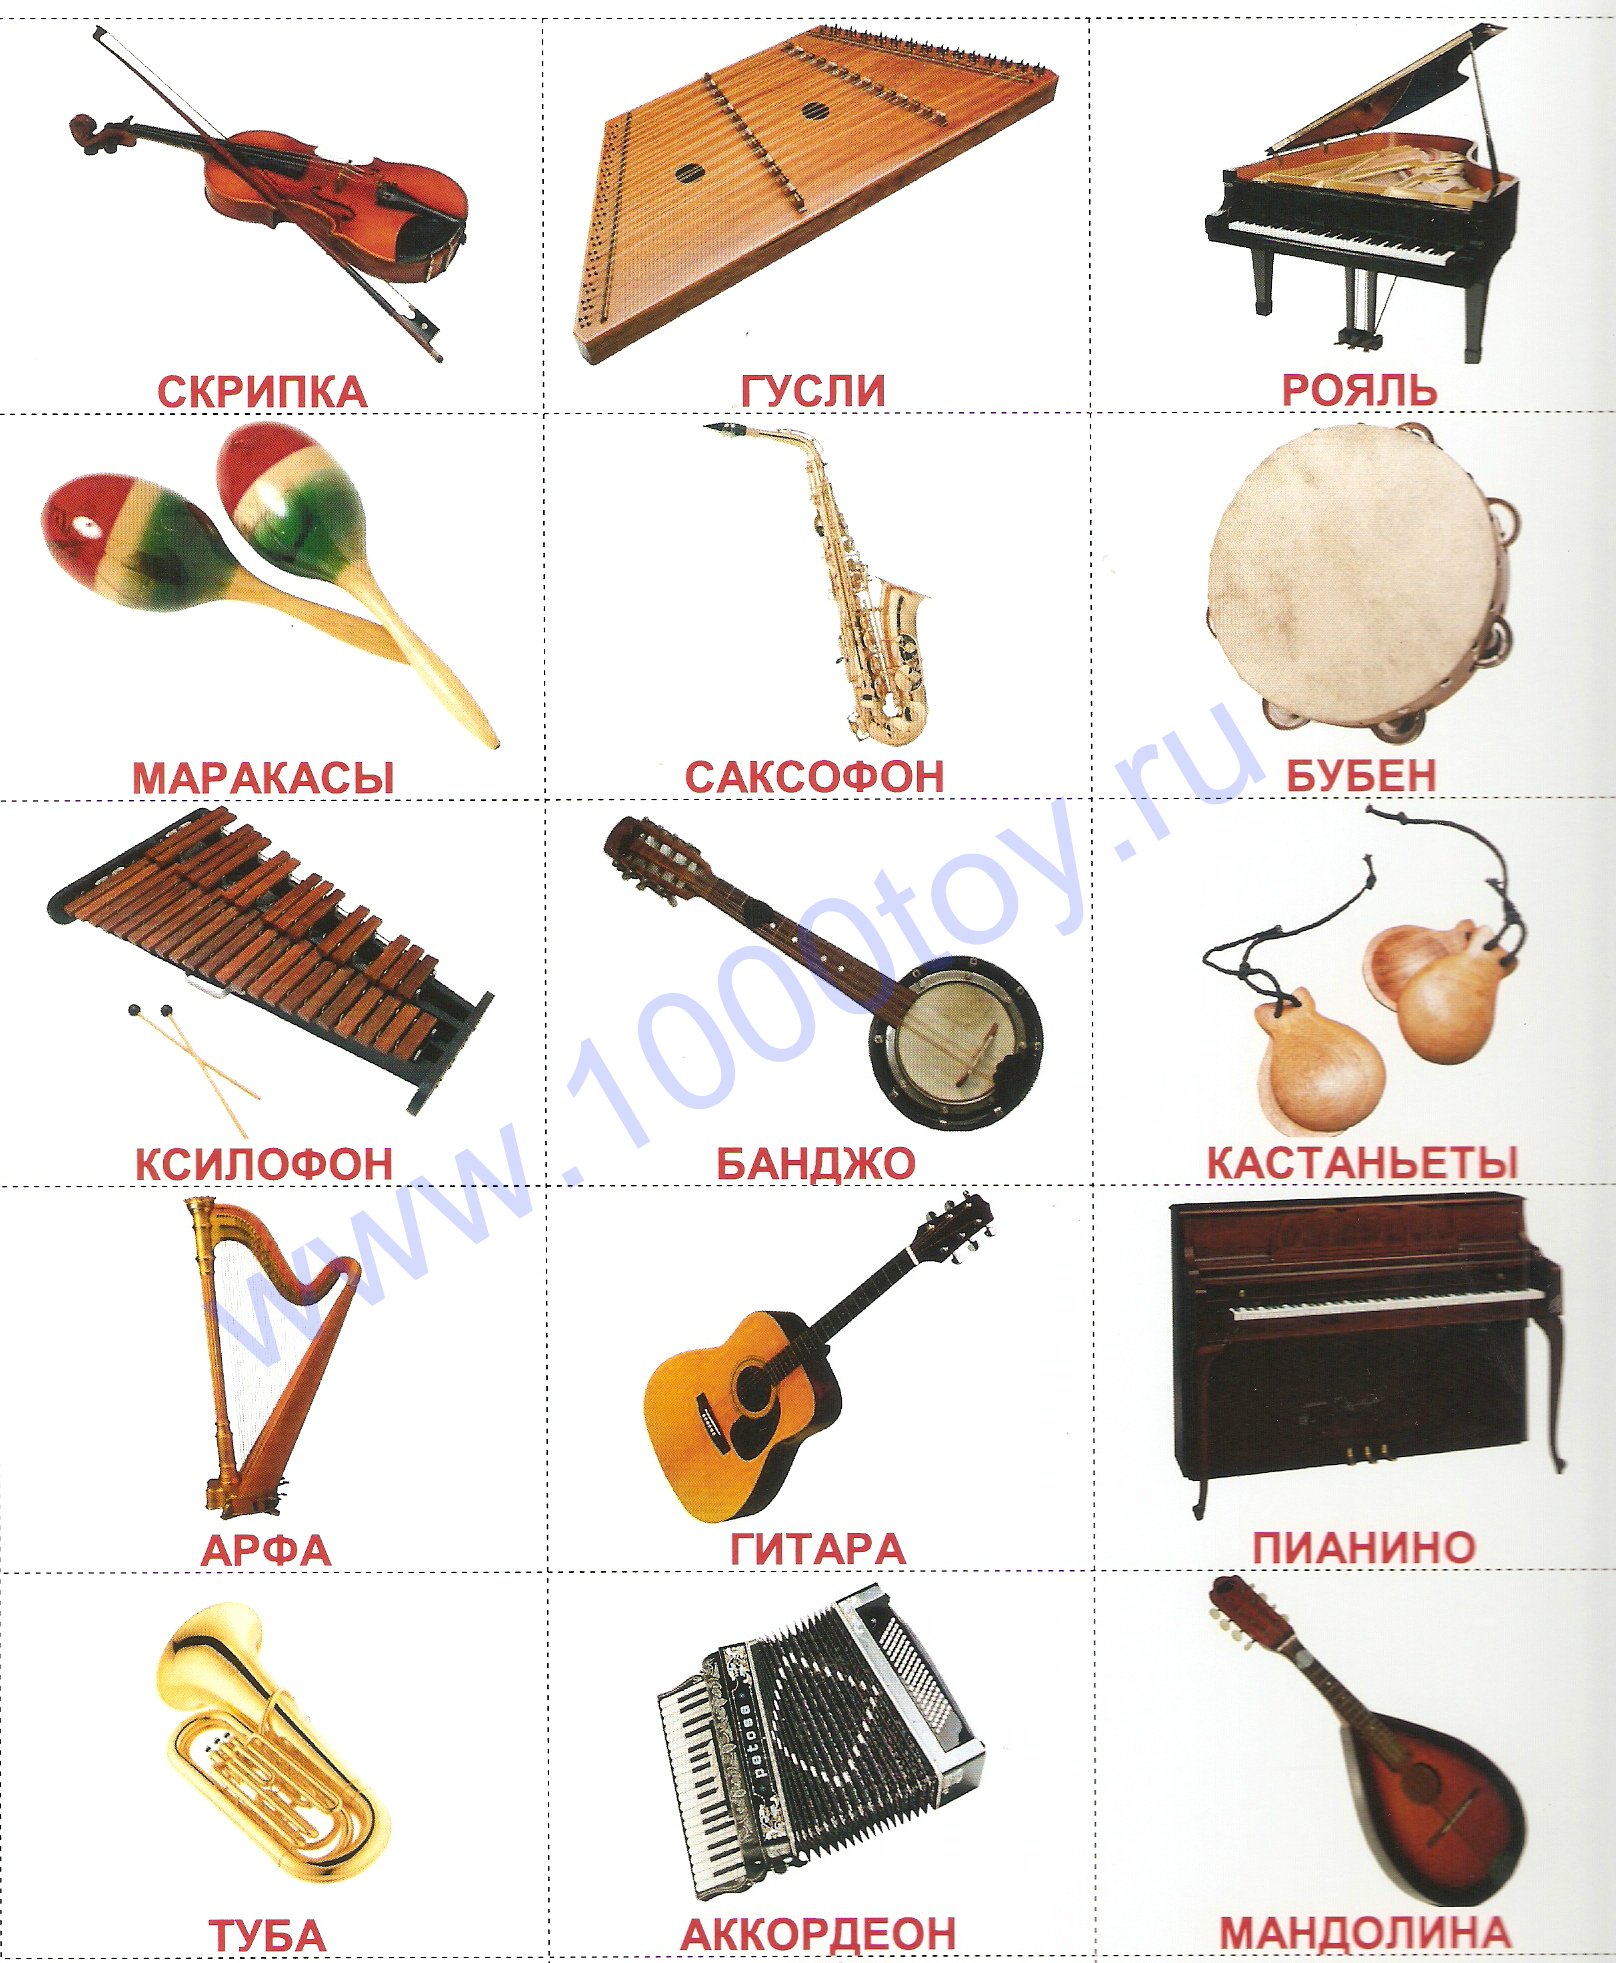 Домашние музыкальные инструменты. Инструменты духовые струнные ударные и клавишные. Музыкальные инструменты струнные духовые ударные клавишные. Духовые, ударные и струнно Щипковые инструменты. Русские народные инструменты струнные ударные духовые клавишные.